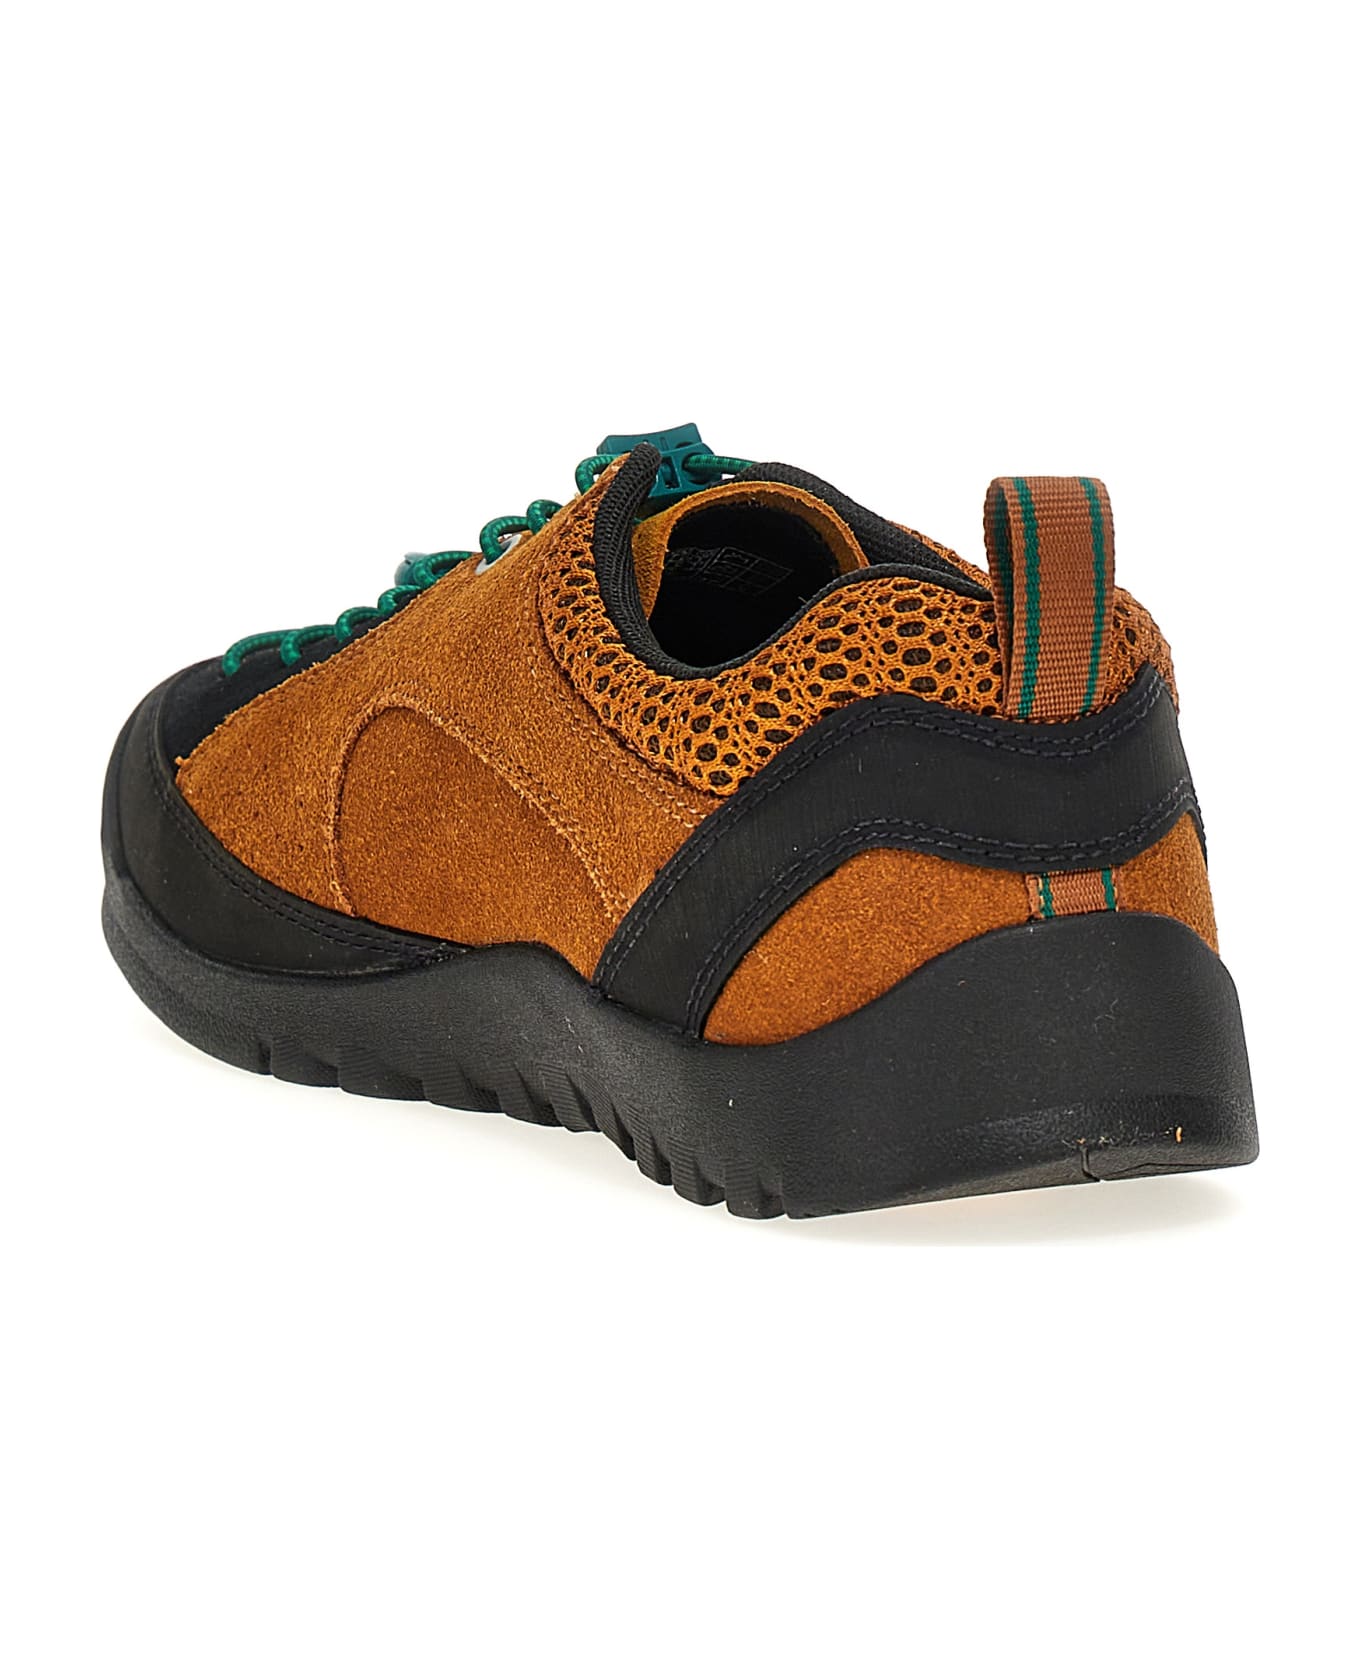 Keen 'jasper 'rocks' Sp' Sneakers - Multicolor